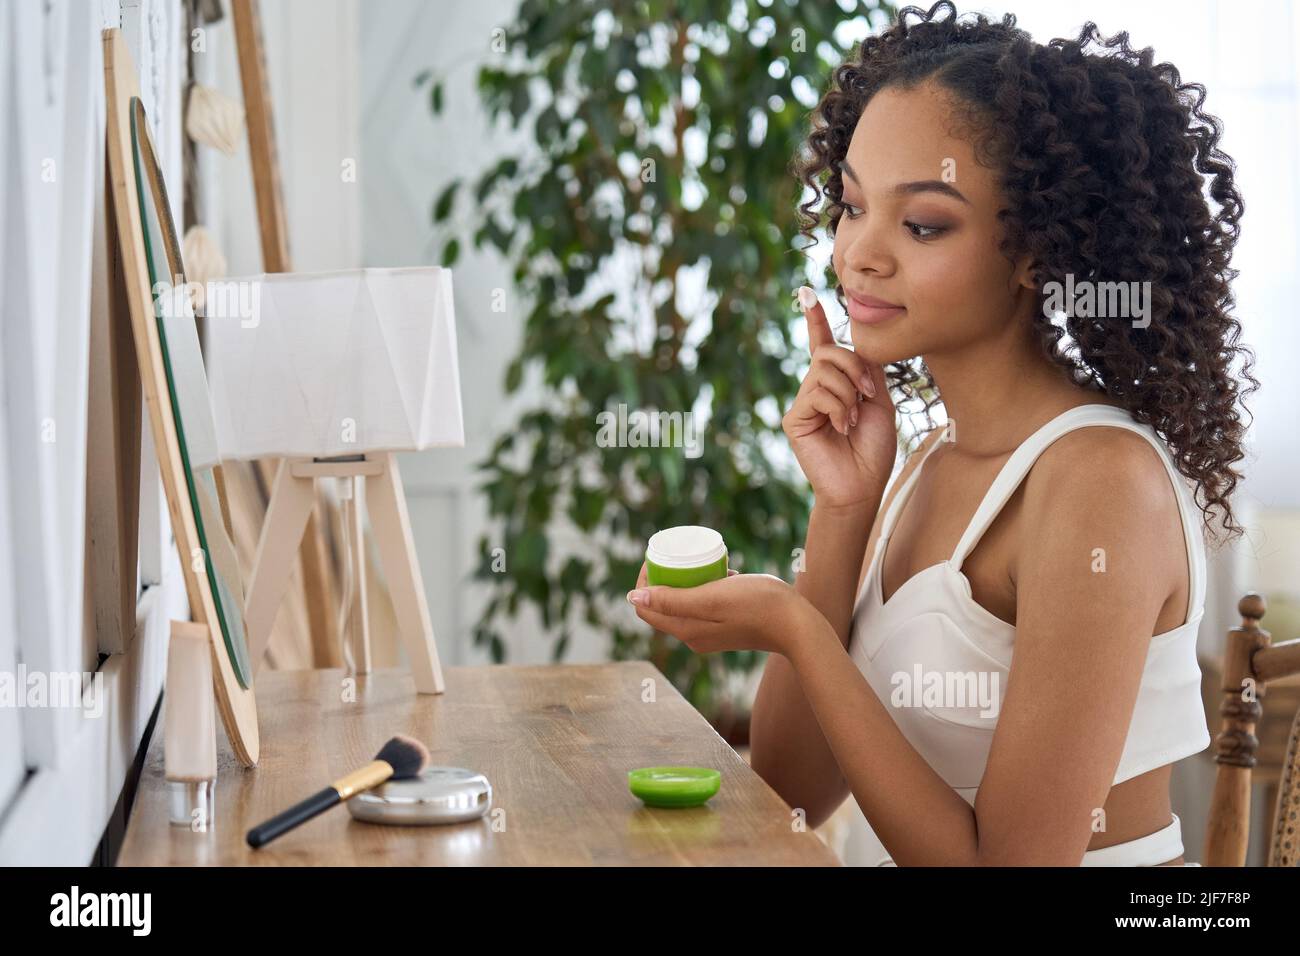 Chica afroamericana adolescente sentada mirando el espejo aplicando crema facial. Foto de stock